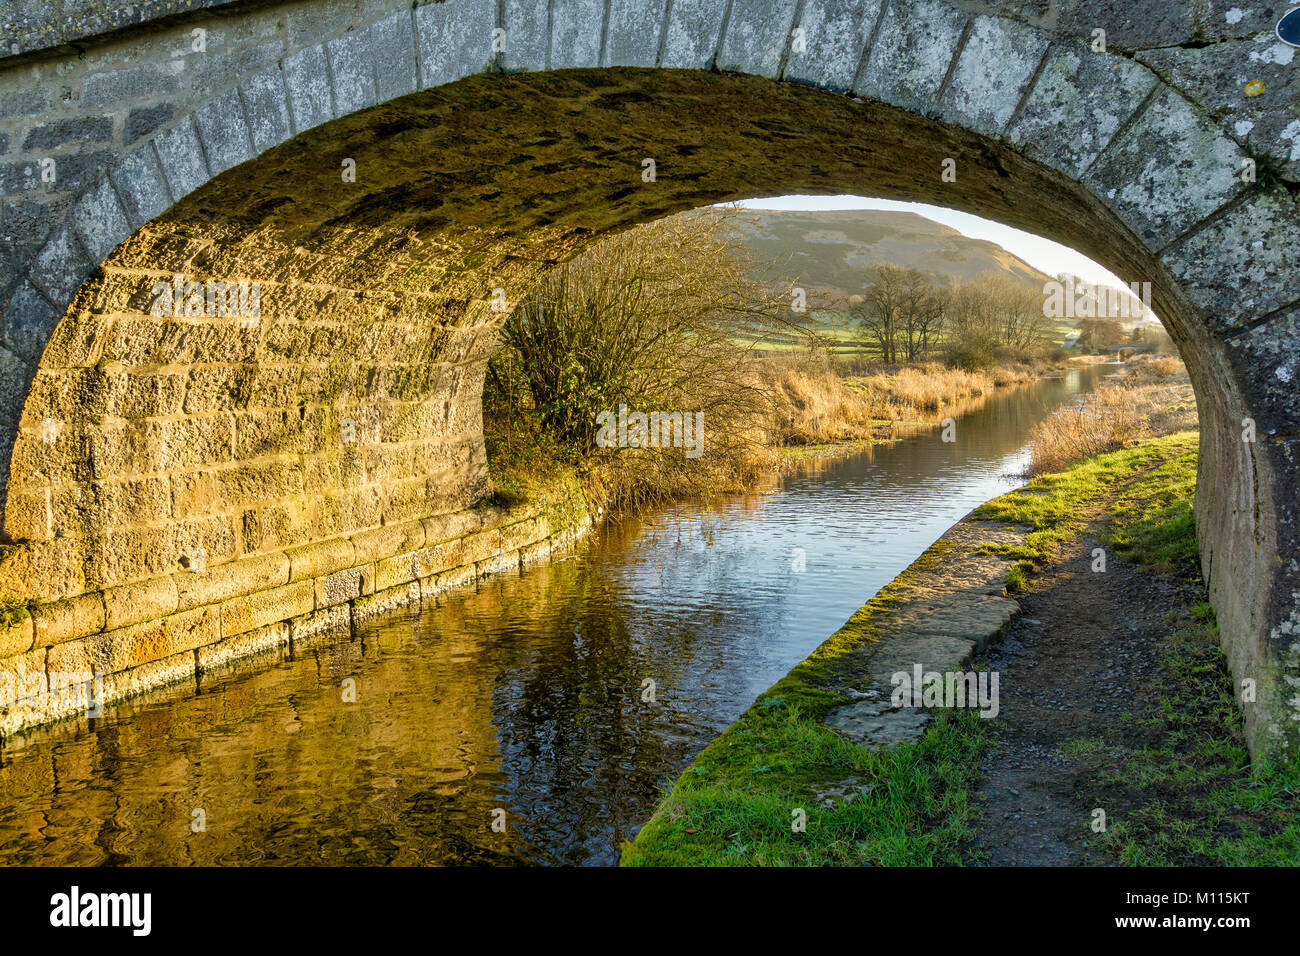 Un puente sobre el canal de Lancaster Foto de stock